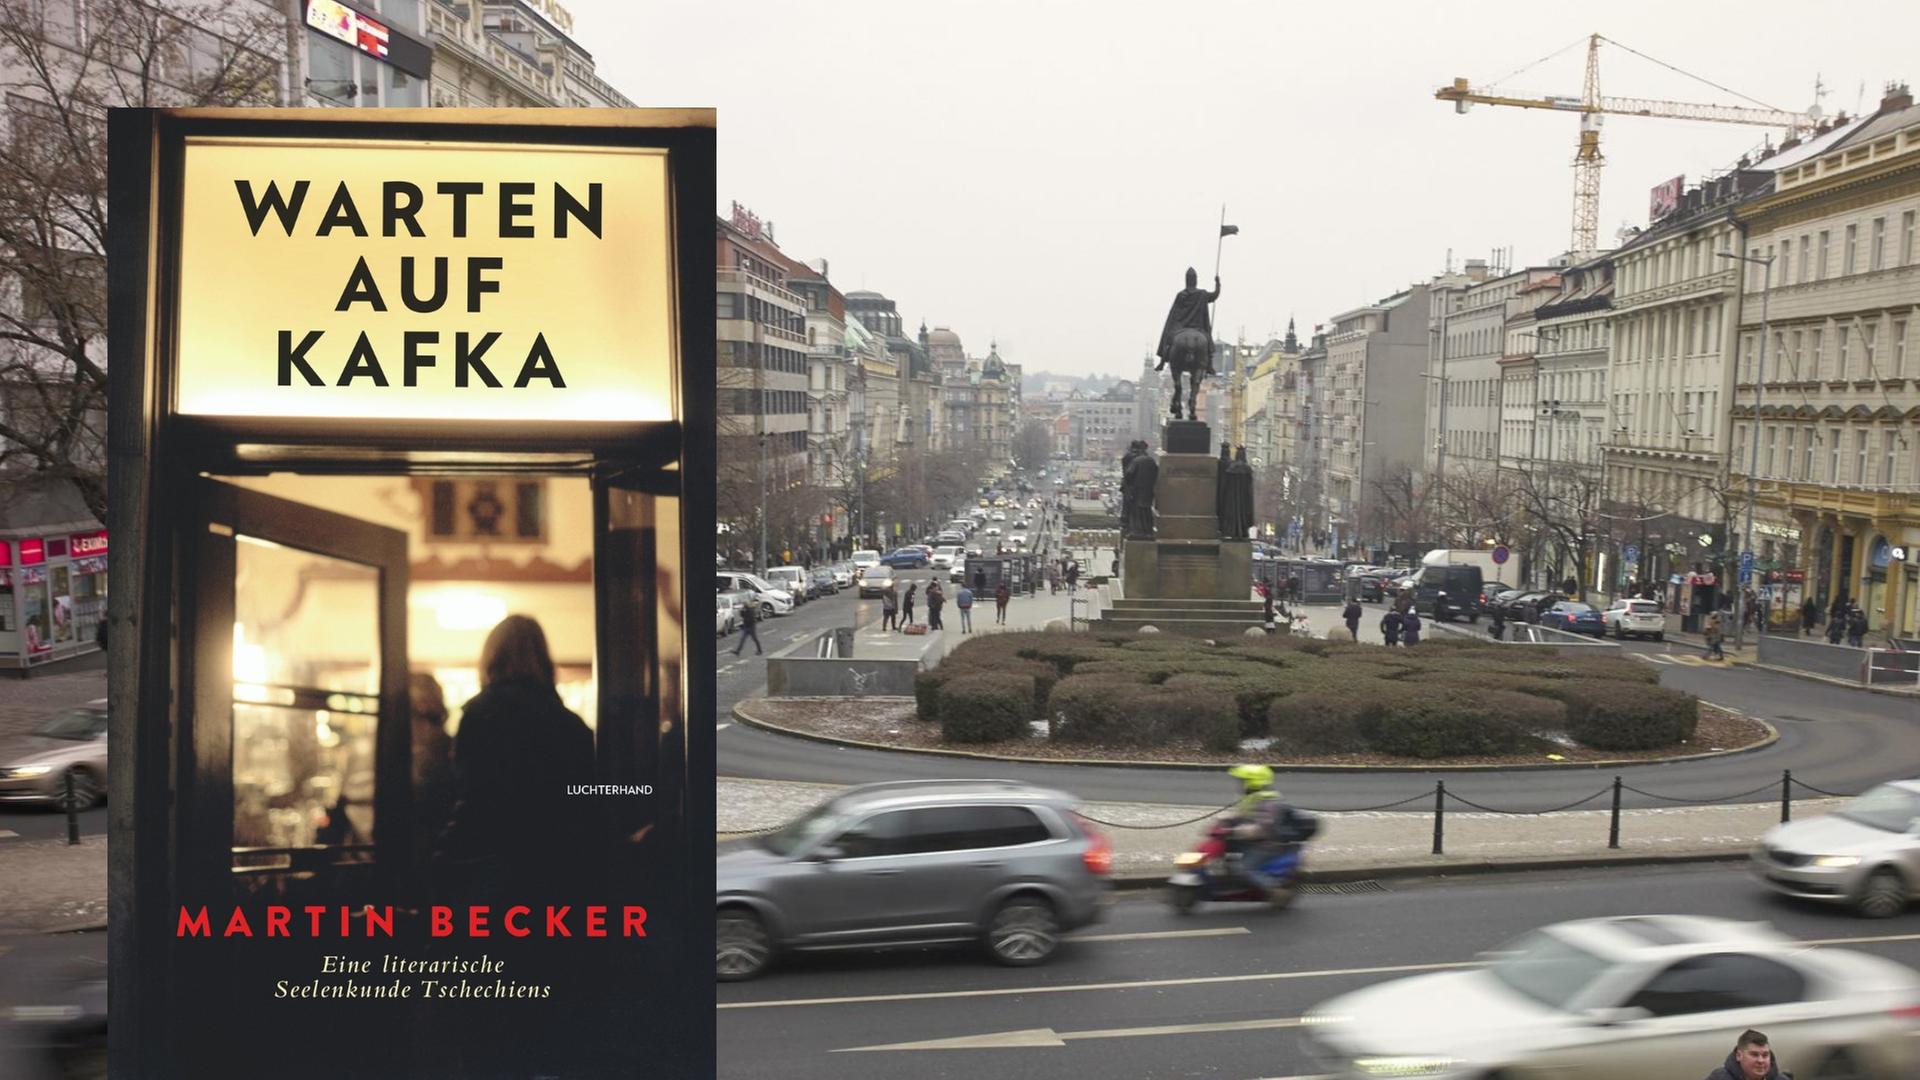 Buchcover: Martin Becker: „Warten auf Kafka. Eine literarische Seelenkunde Tschechiens“